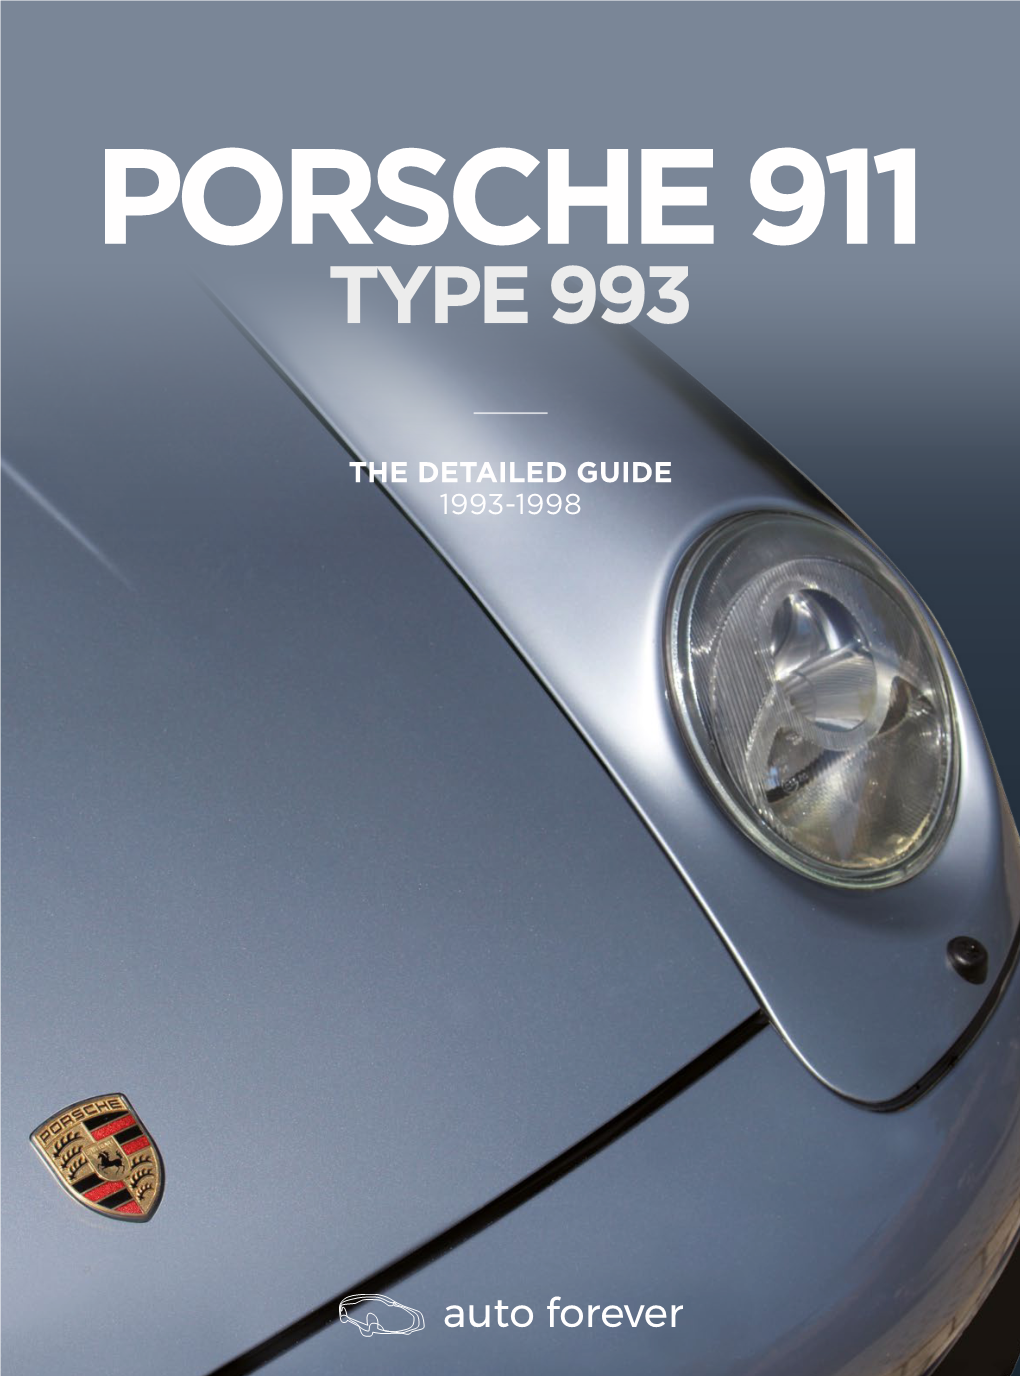 Type 993 Porsche 911